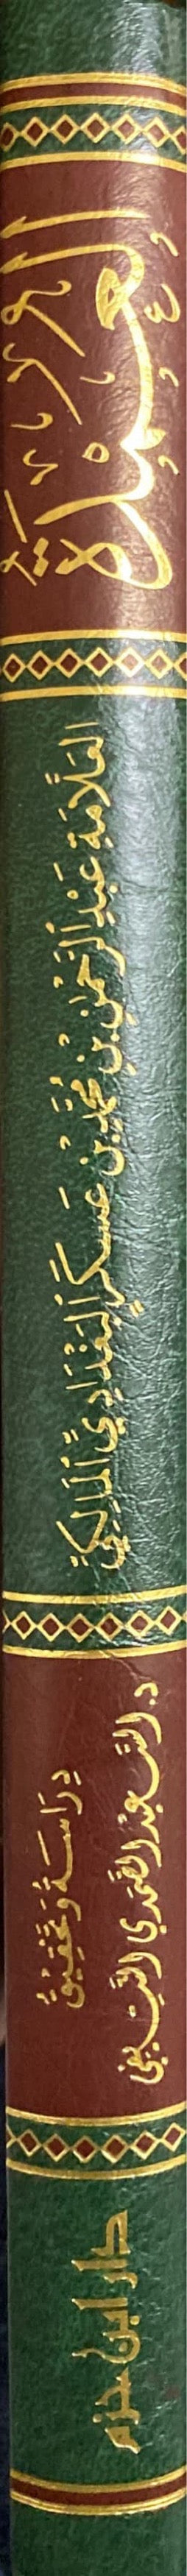 العمدة - فقه المالكي Al Umdah - Fiqh Al Maliki (Ibn Hazm)